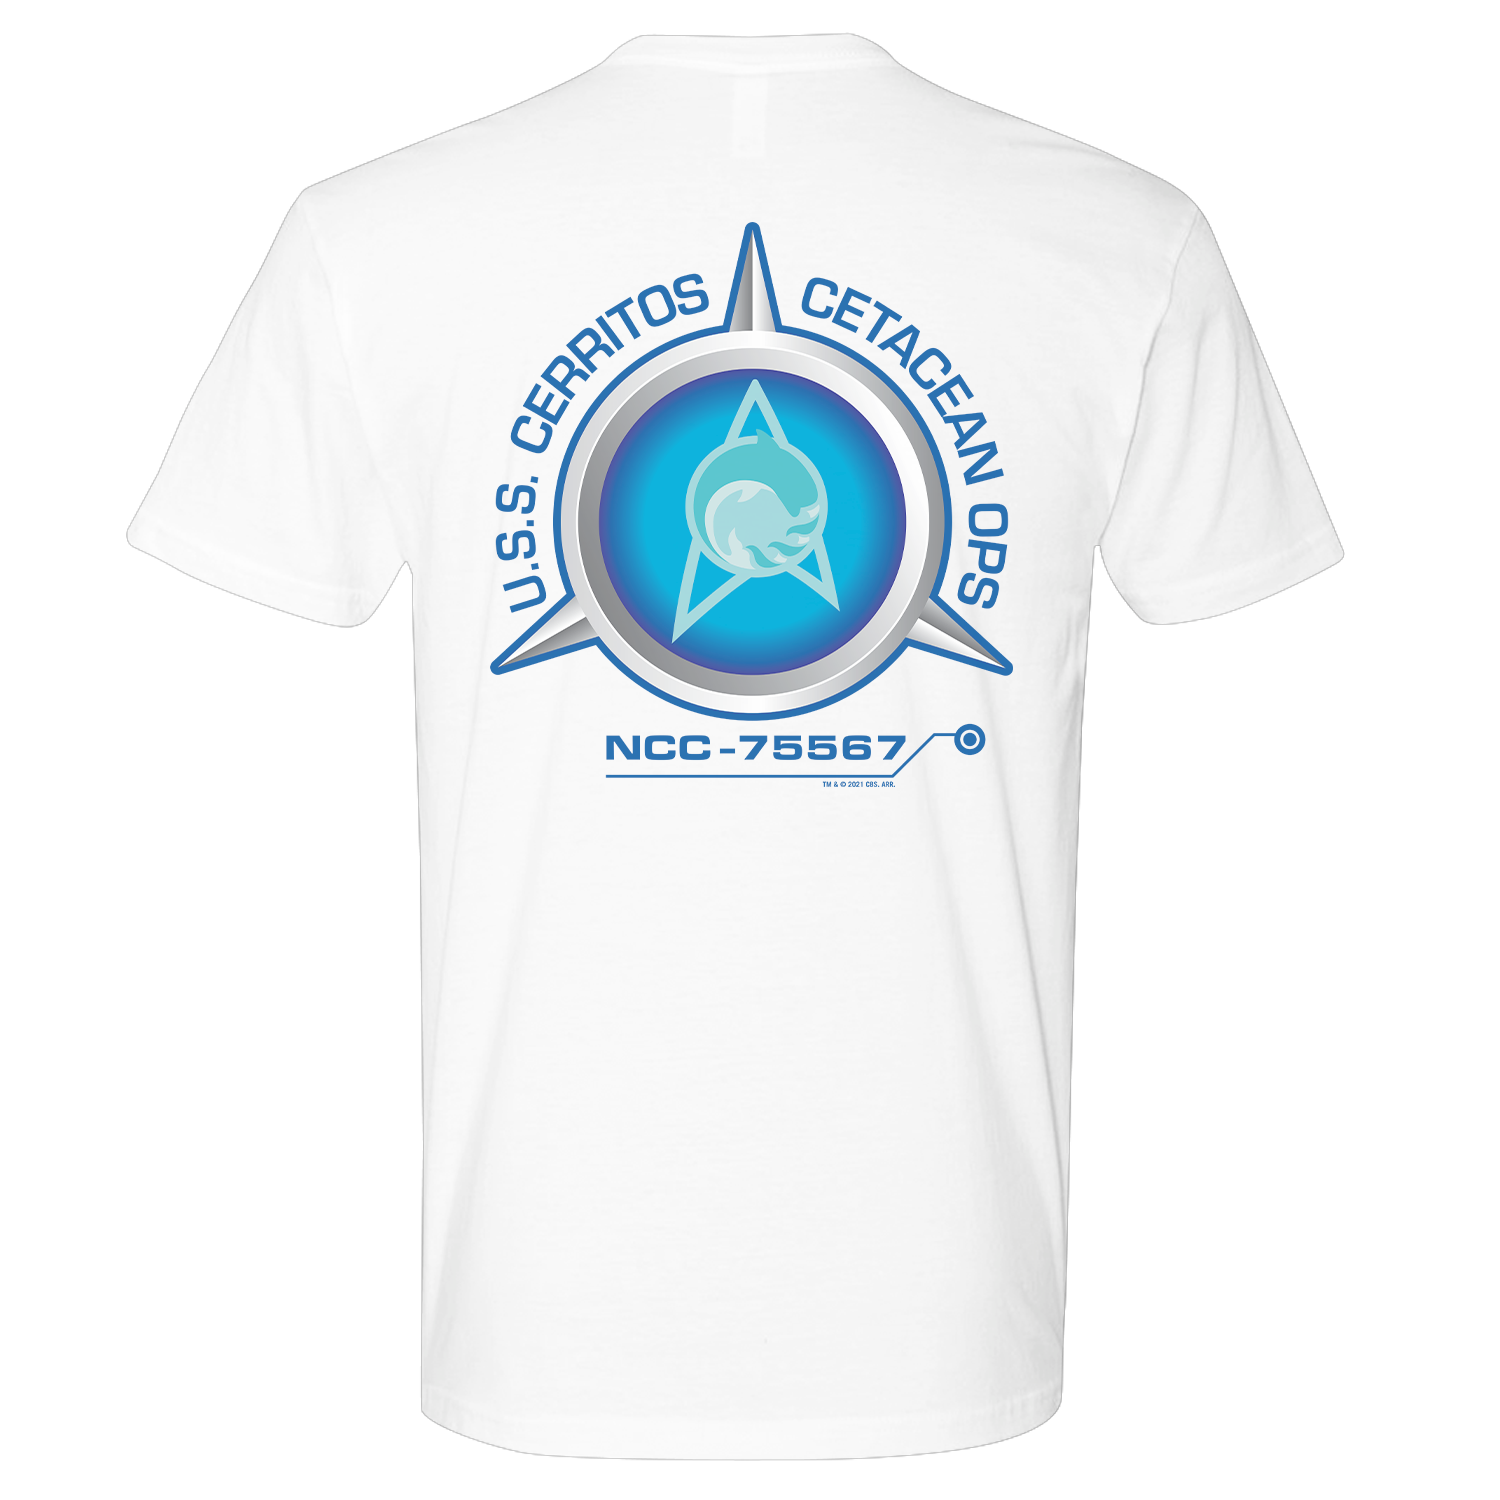 Star Trek: Lower Decks Cetacean Ops Delta Logo Adult Short Sleeve T-Shirt